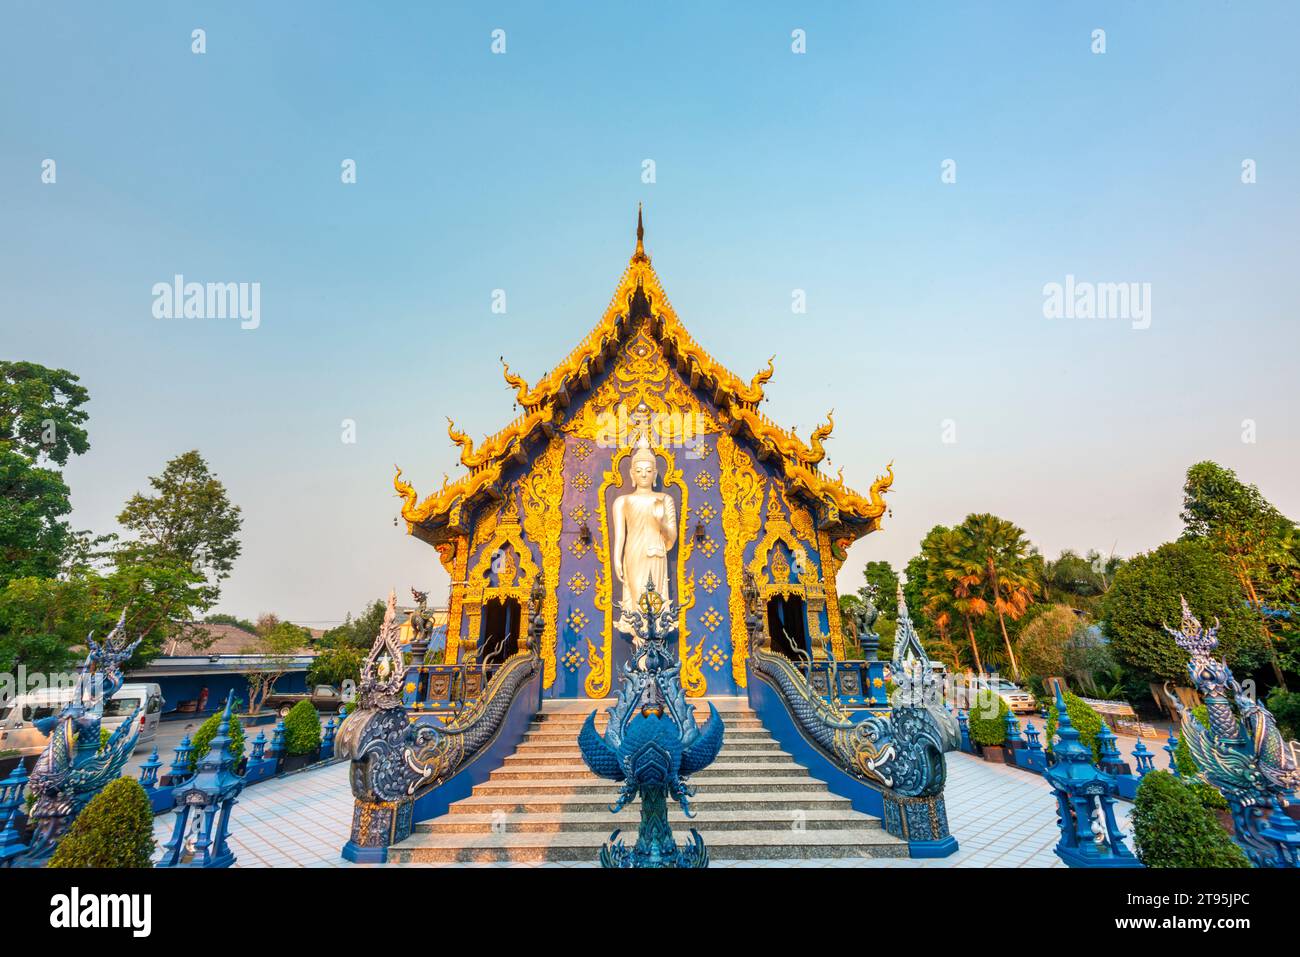 Splendidamente decorata con disegni blu e oro, una grande statua di Buddha bianco-argento in piedi accanto all'ingresso del tempio e una calda luce del tramonto che splende Foto Stock